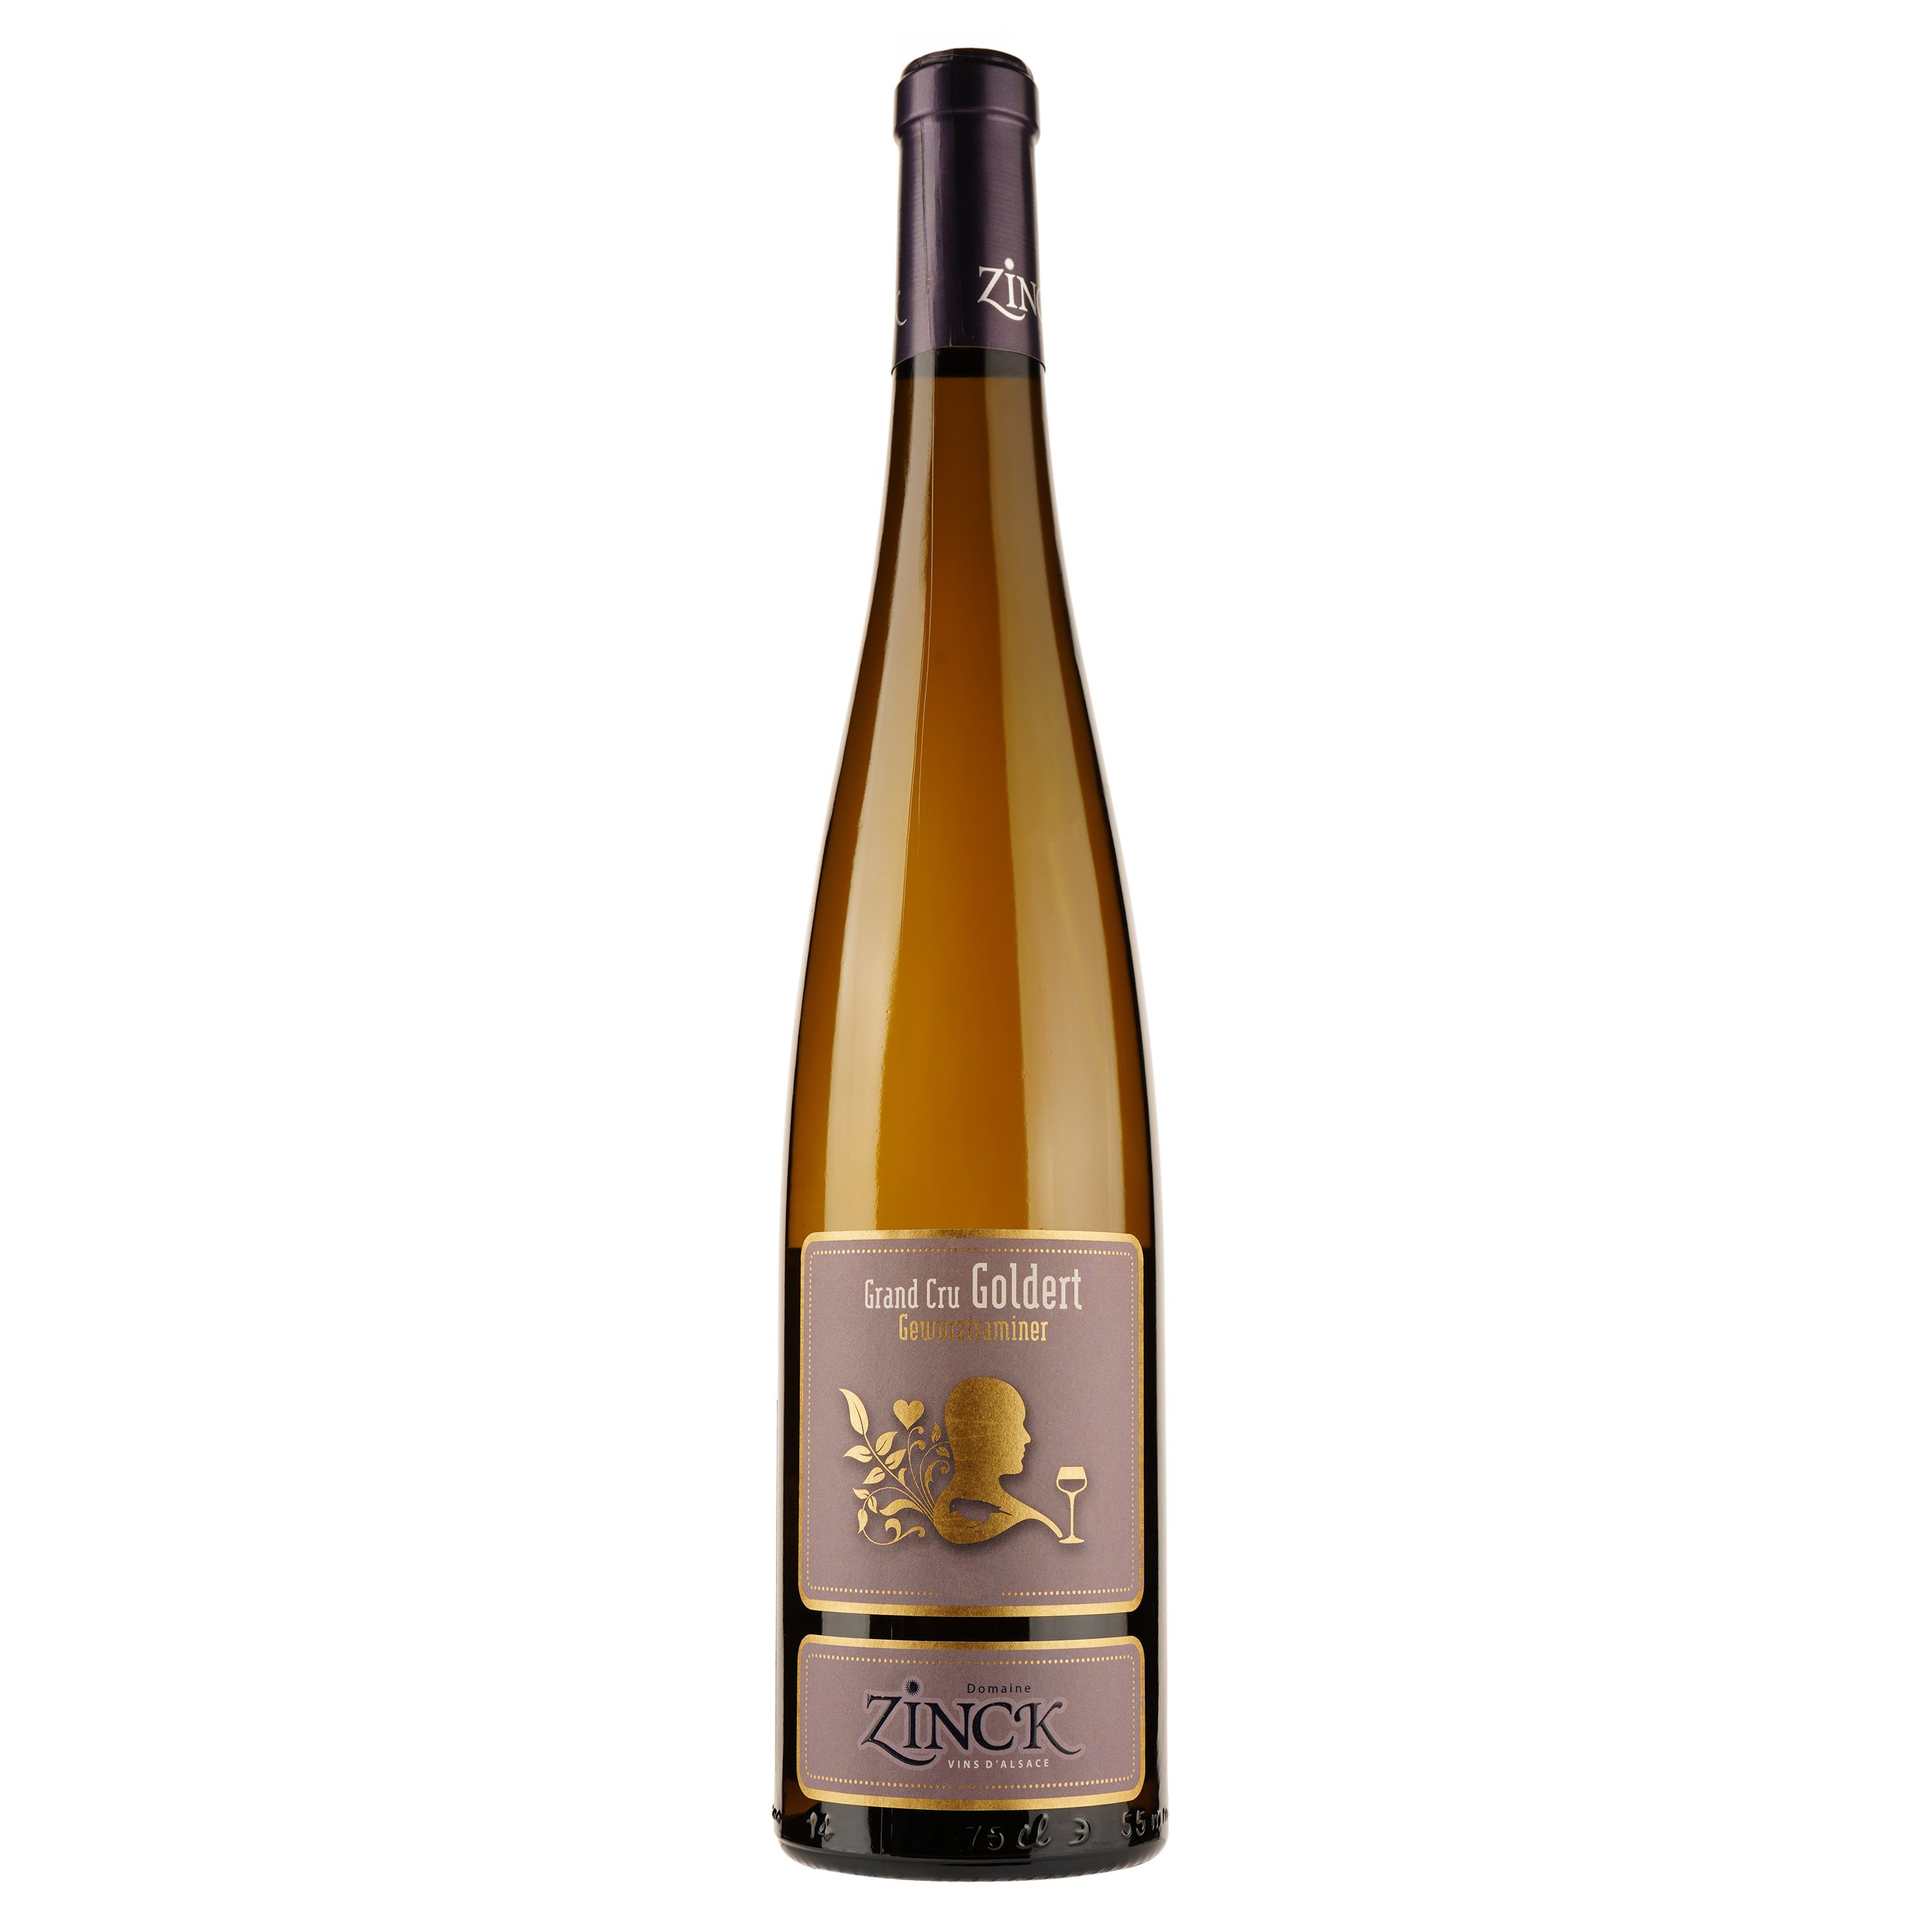 Вино Vins Zinck Sarl Gewurztraminer Grand Cru Goldert, белое, сухое, 0,75 л - фото 1